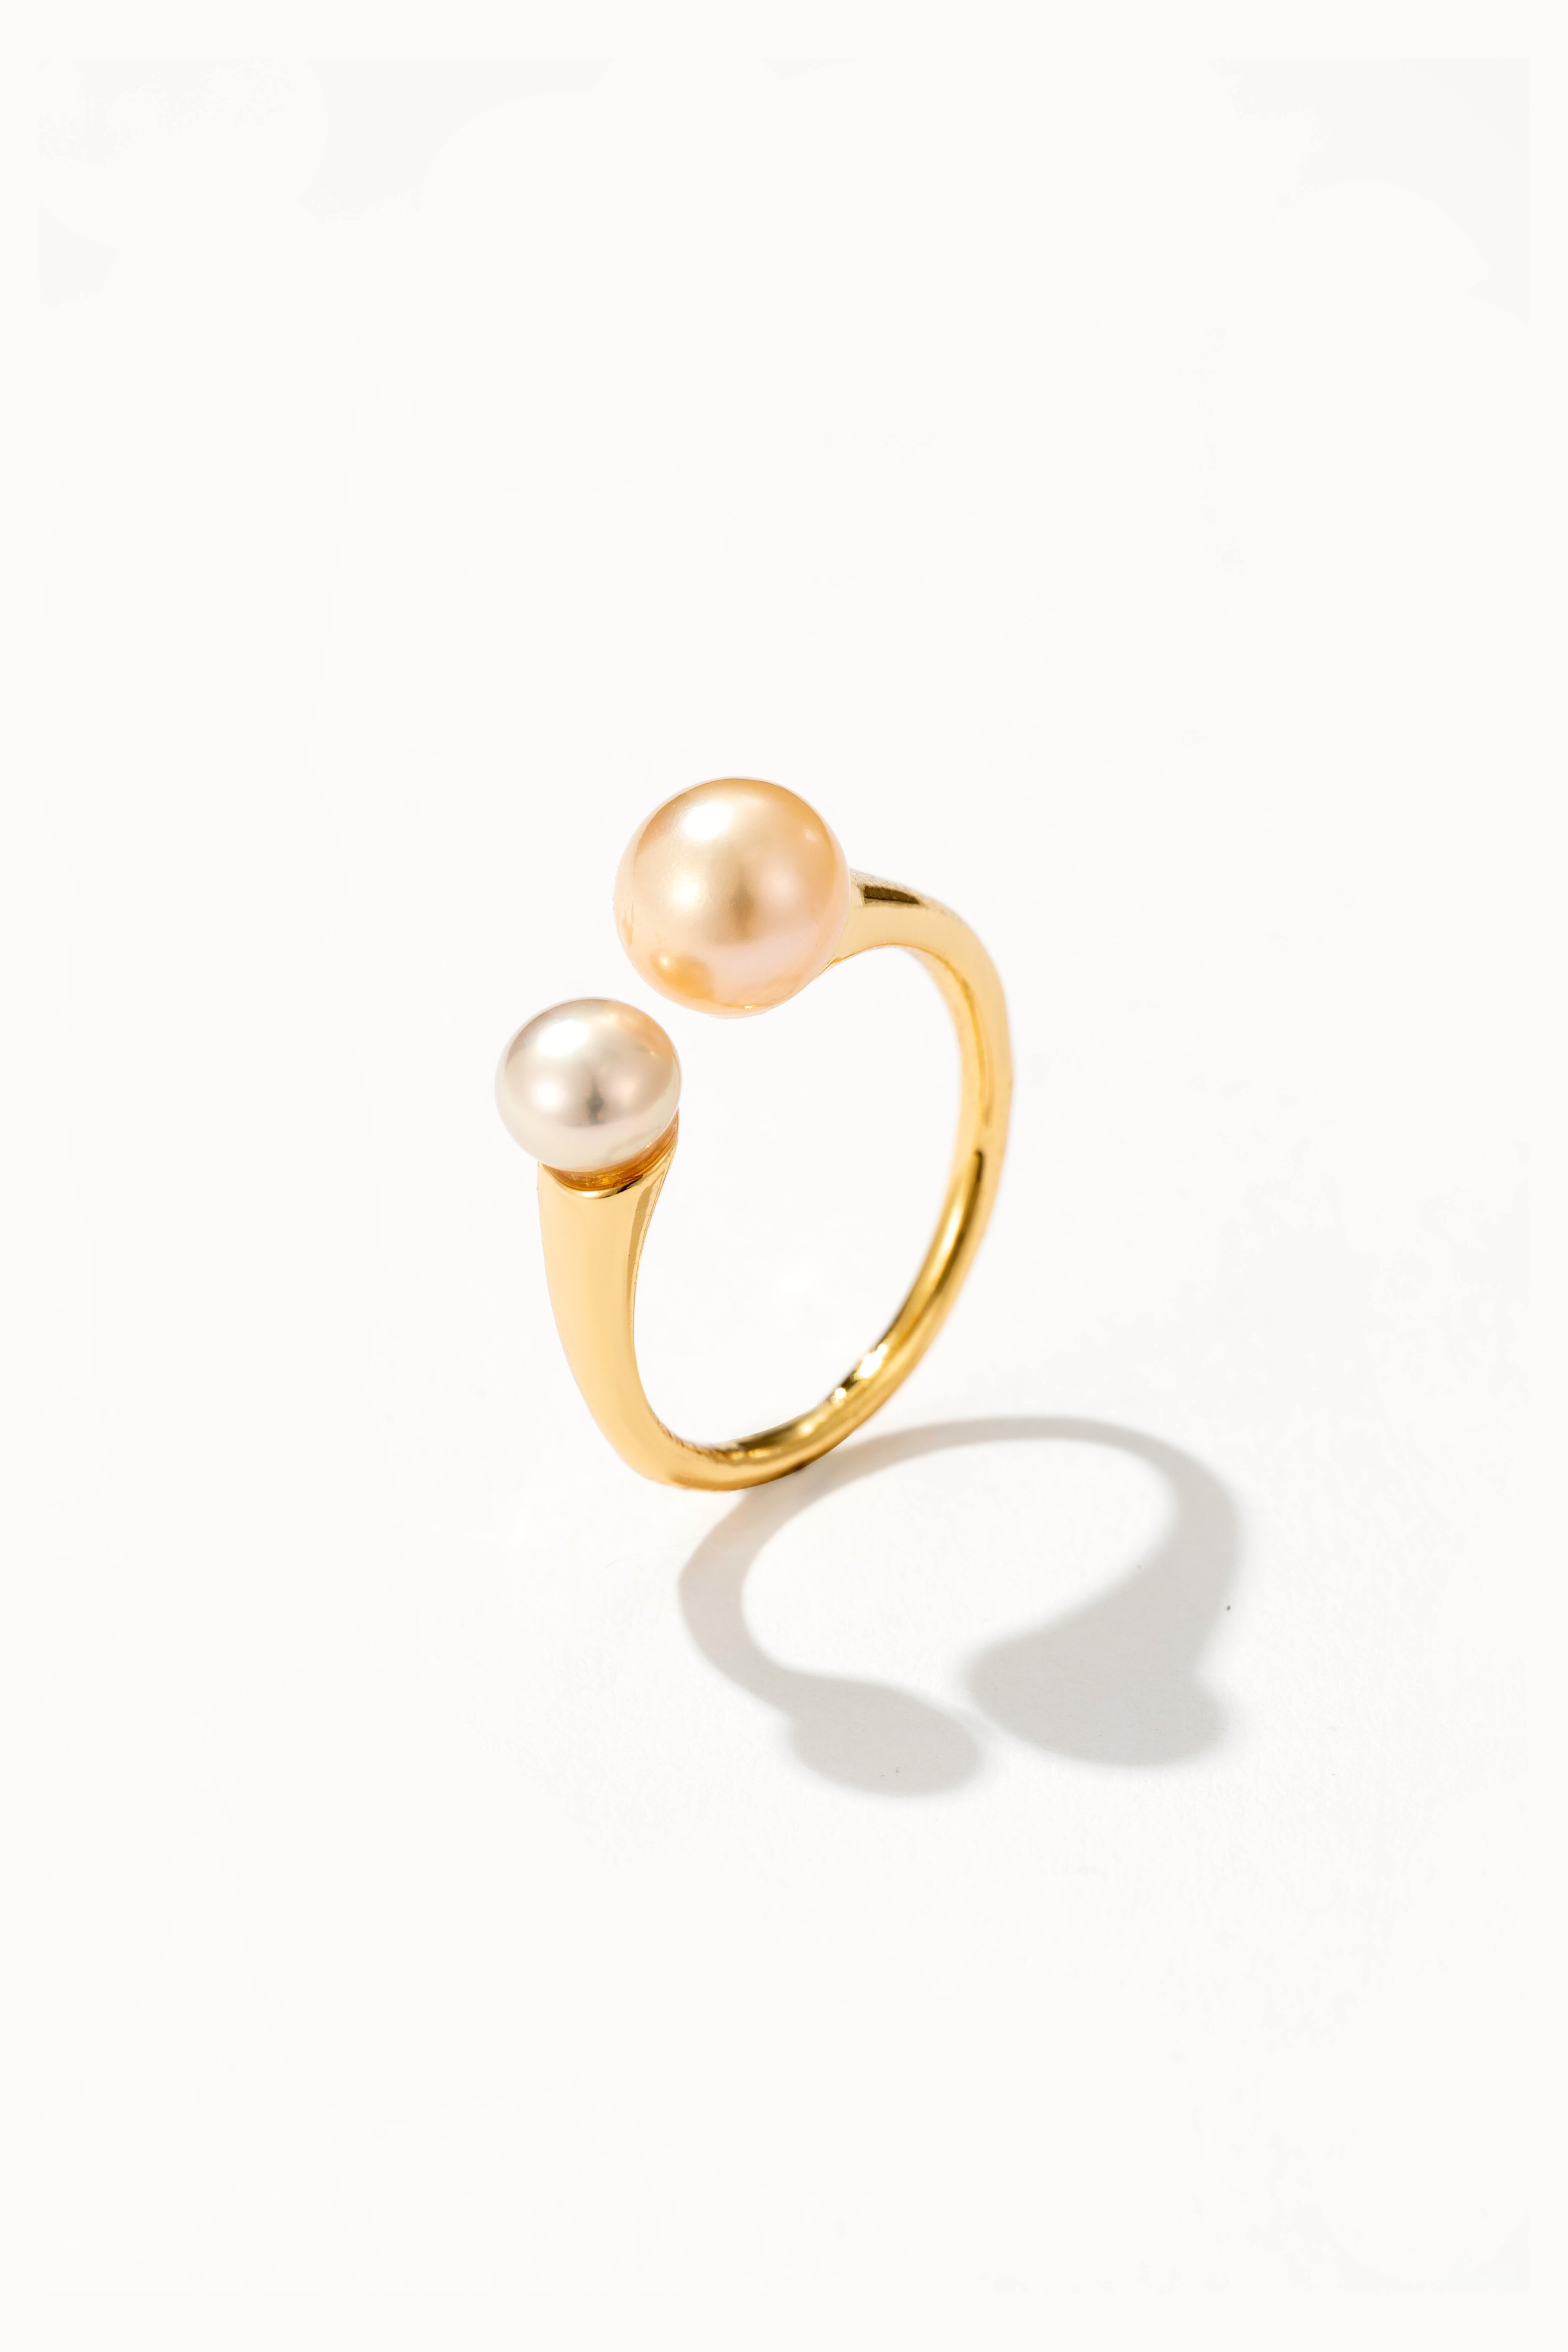 Blush Pink Pearl Ring